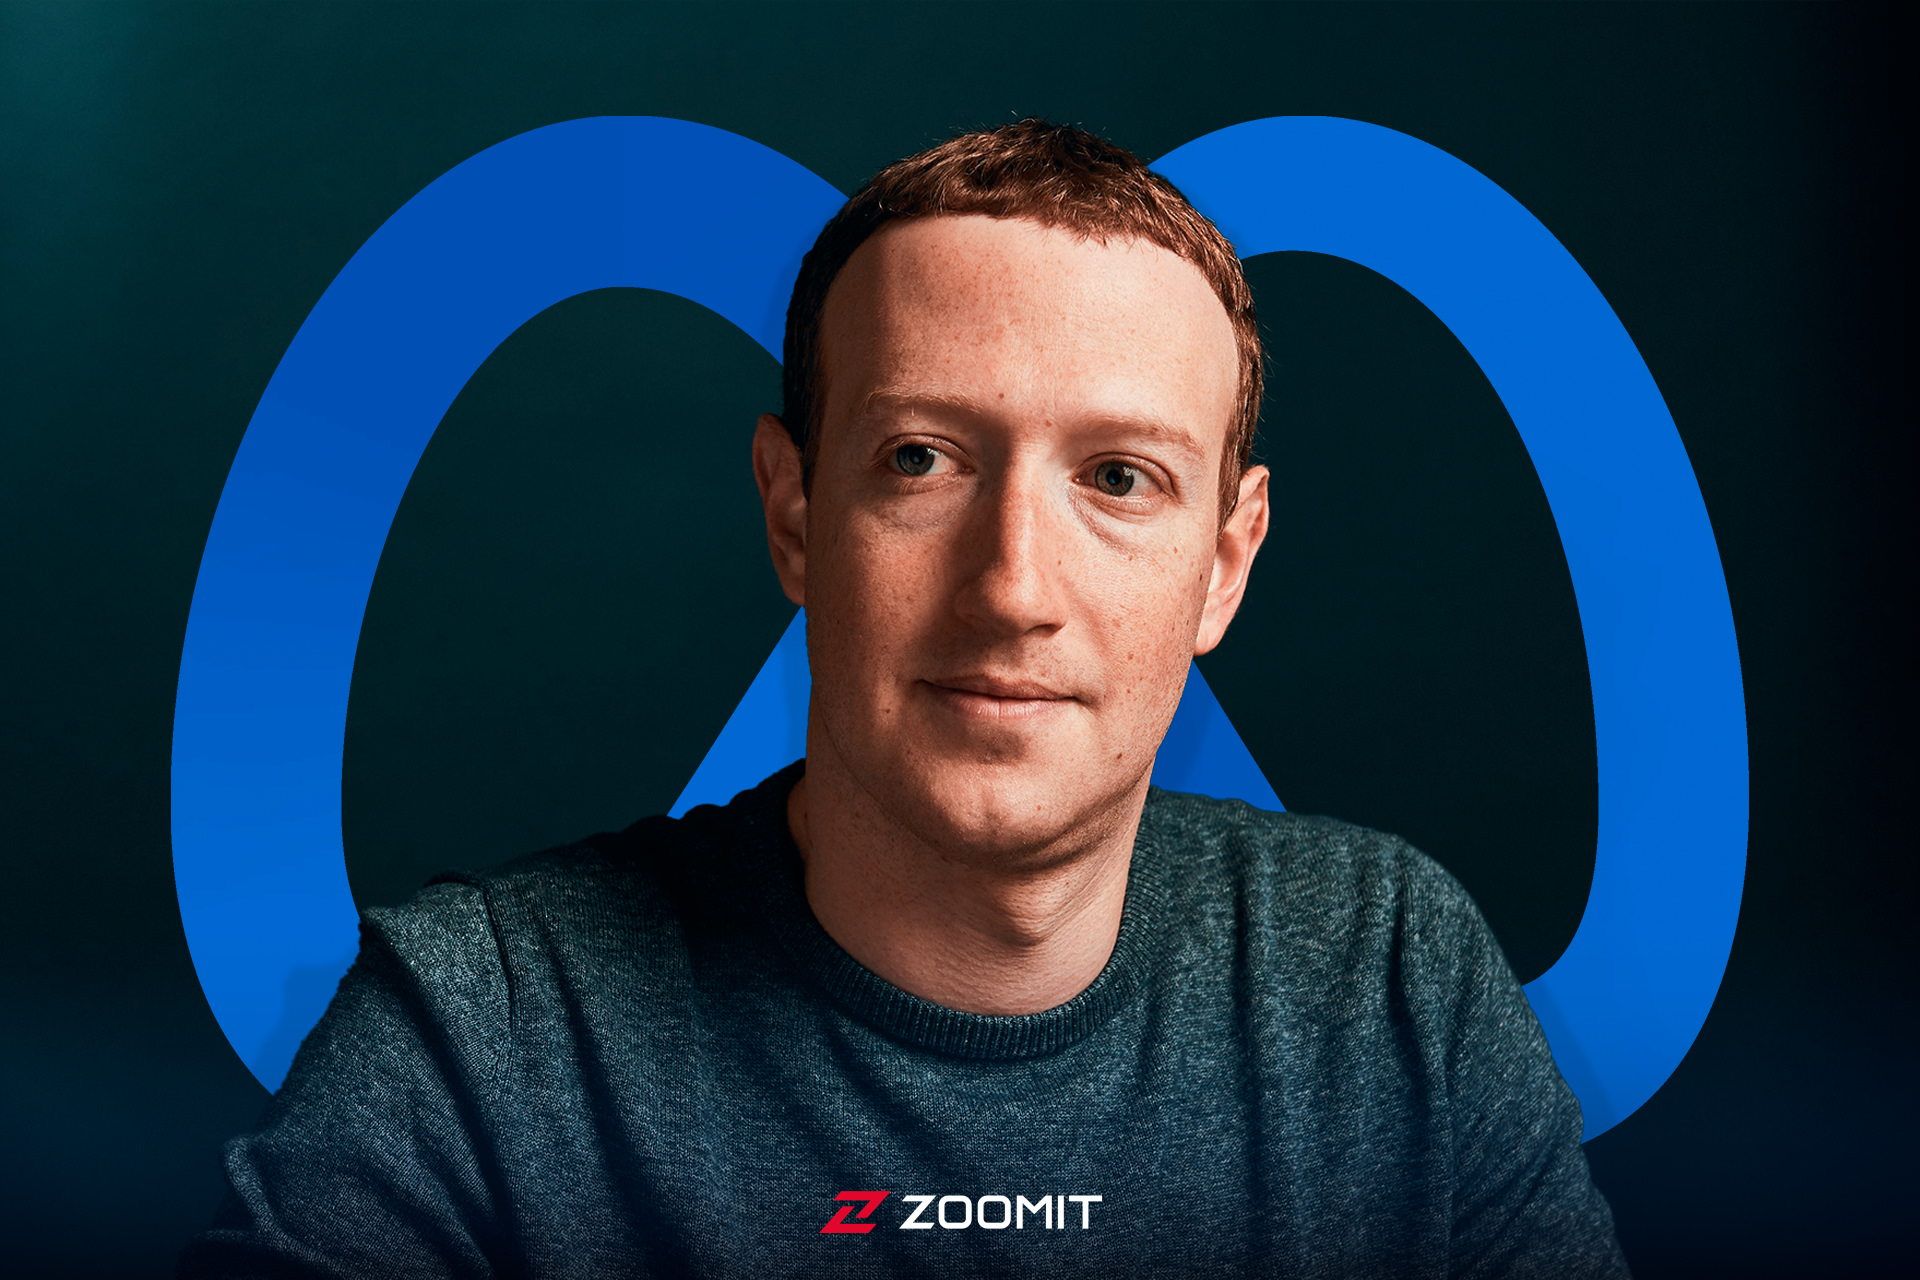 مارک زاکربرگ / Mark Zuckerberg با لوگوی متا در پشت سر